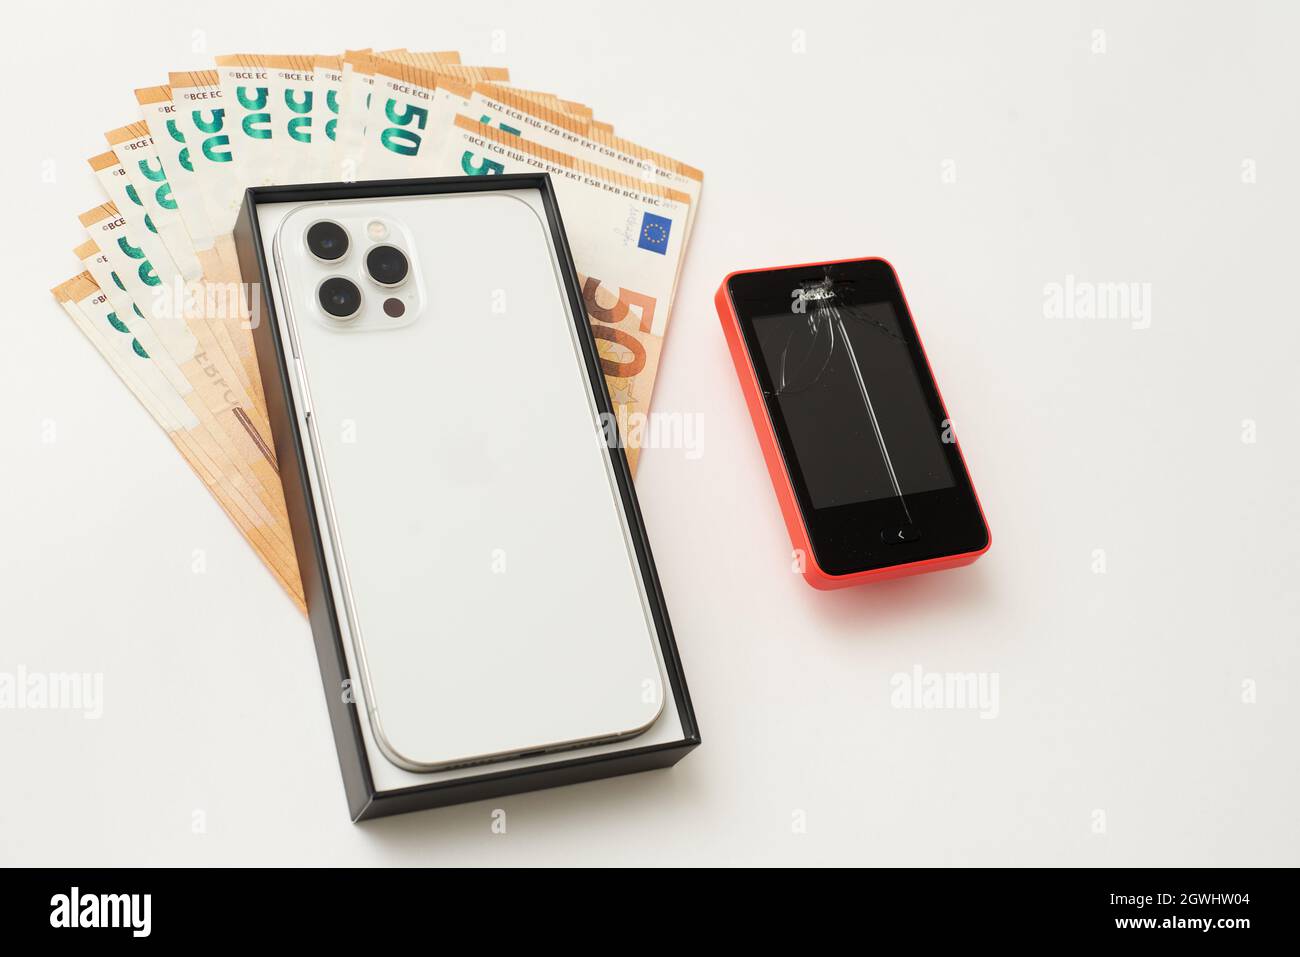 STARIY OSKOL, RUSSIE - 5 JUILLET 2021 : achat d'un nouvel iPhone pour remplacer un ancien téléphone Banque D'Images